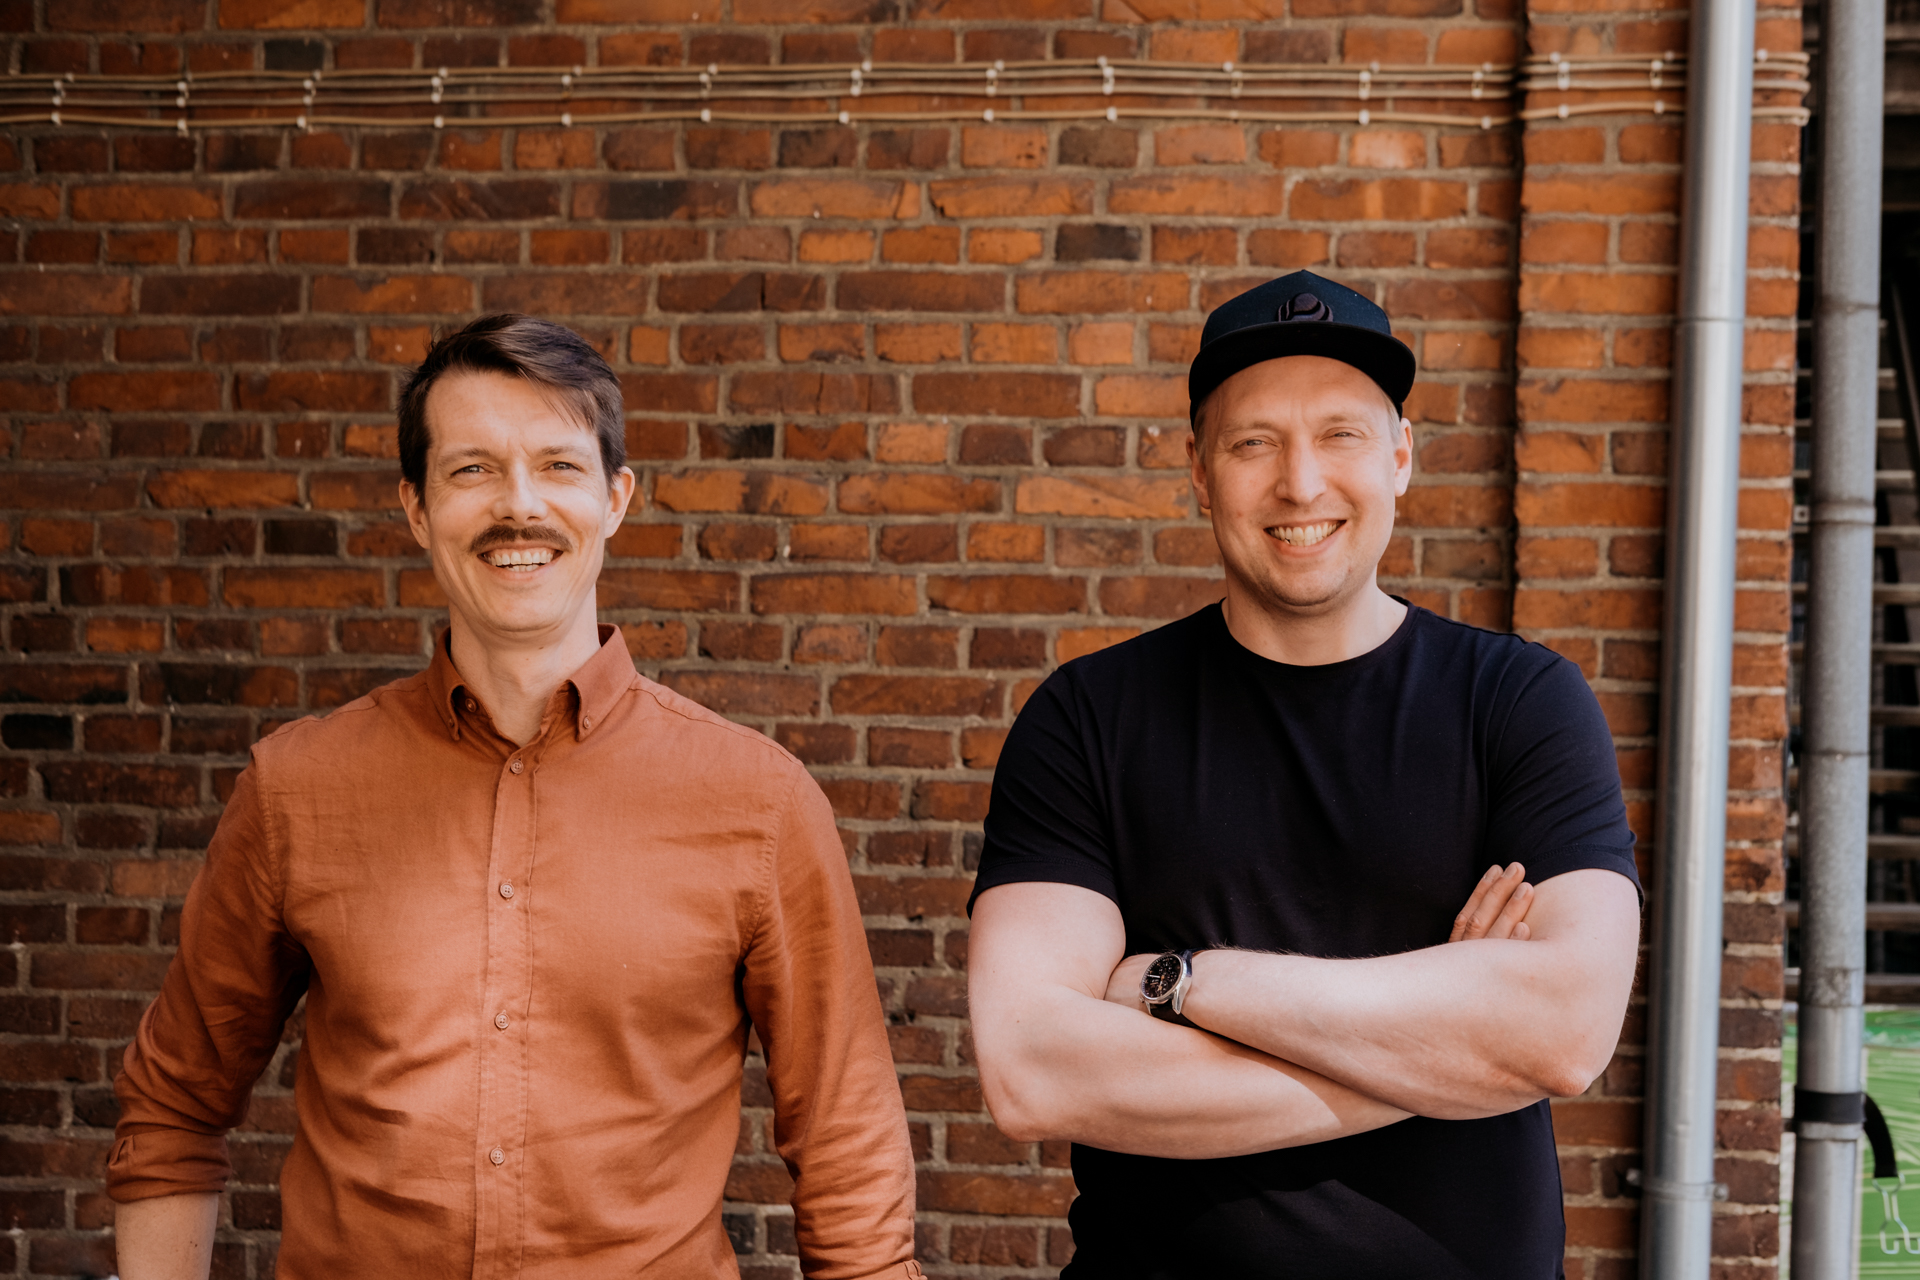 Selko Digitalin perustaja Jere Havo sekä Louhos Digitalin toimitusjohtaja Iiro Junnila hymyilevät kameralle punatiiliseinän edessä.